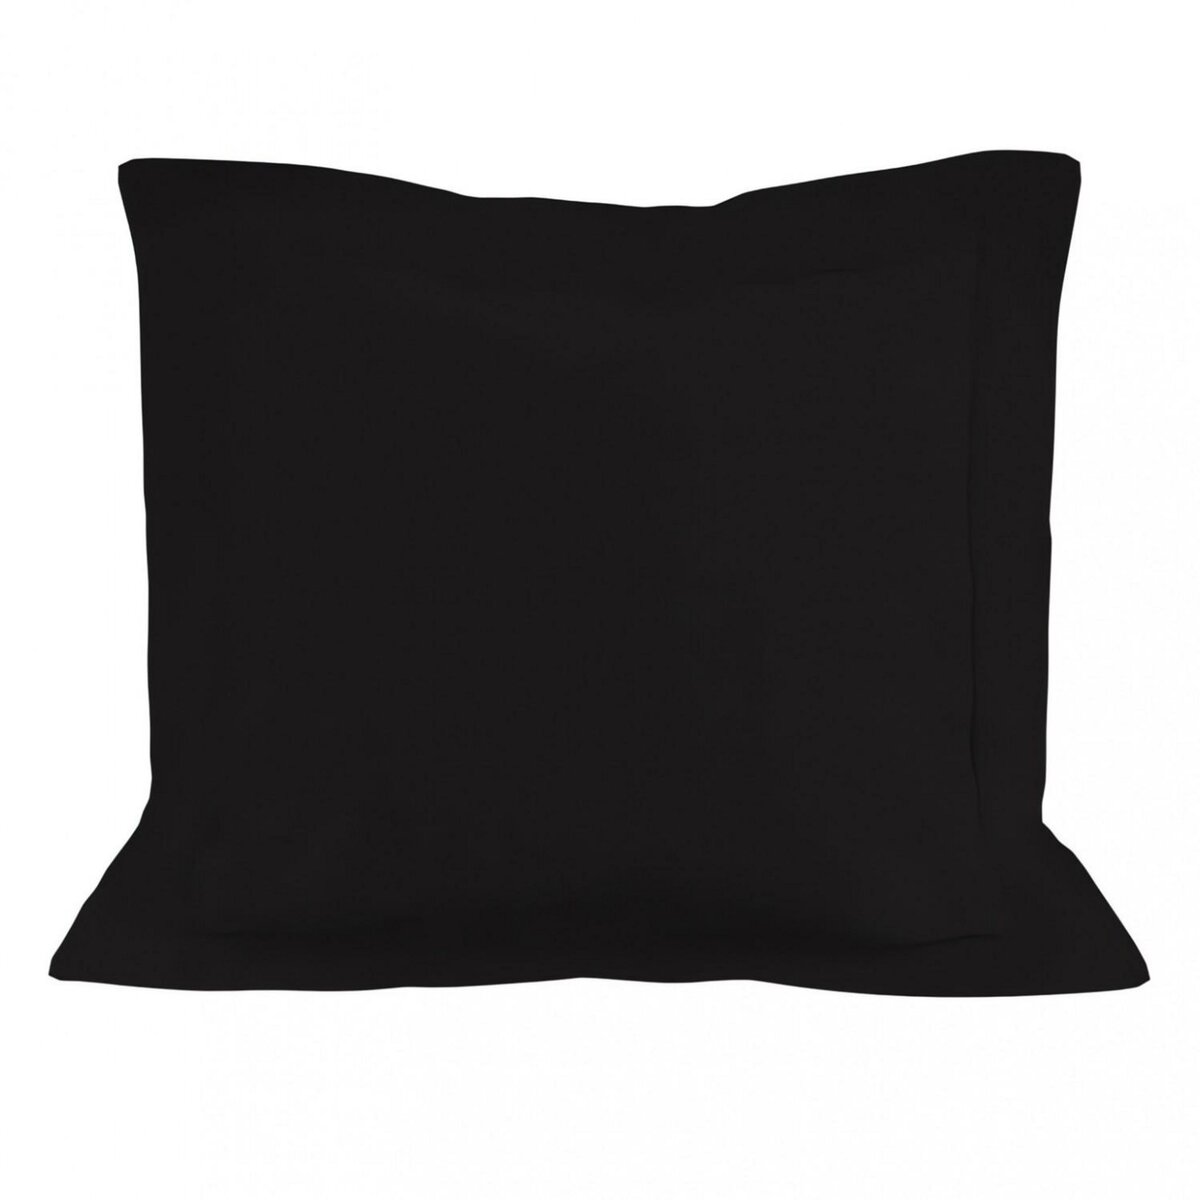 SOLEIL D'OCRE Taie d'oreiller en coton 57 fils 63x63 cm UNI noir, par Soleil d'ocre